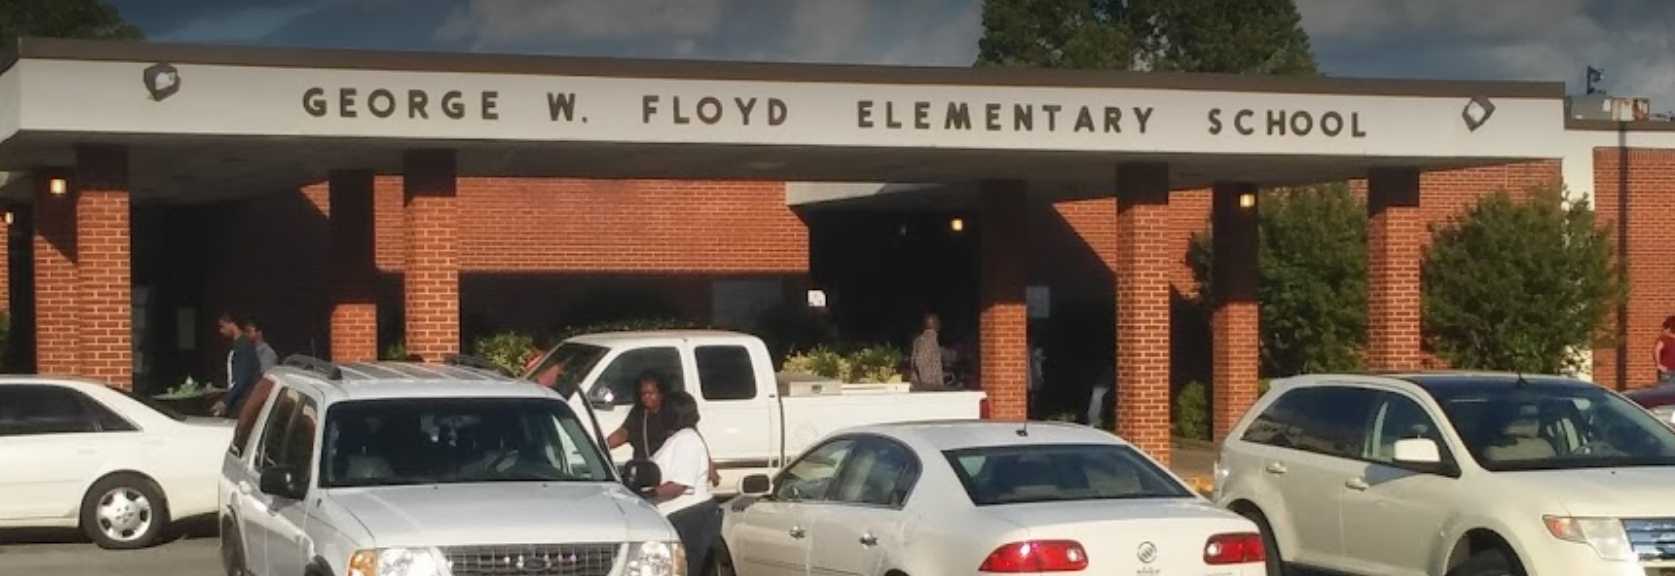 George W. Floyd Elementary School